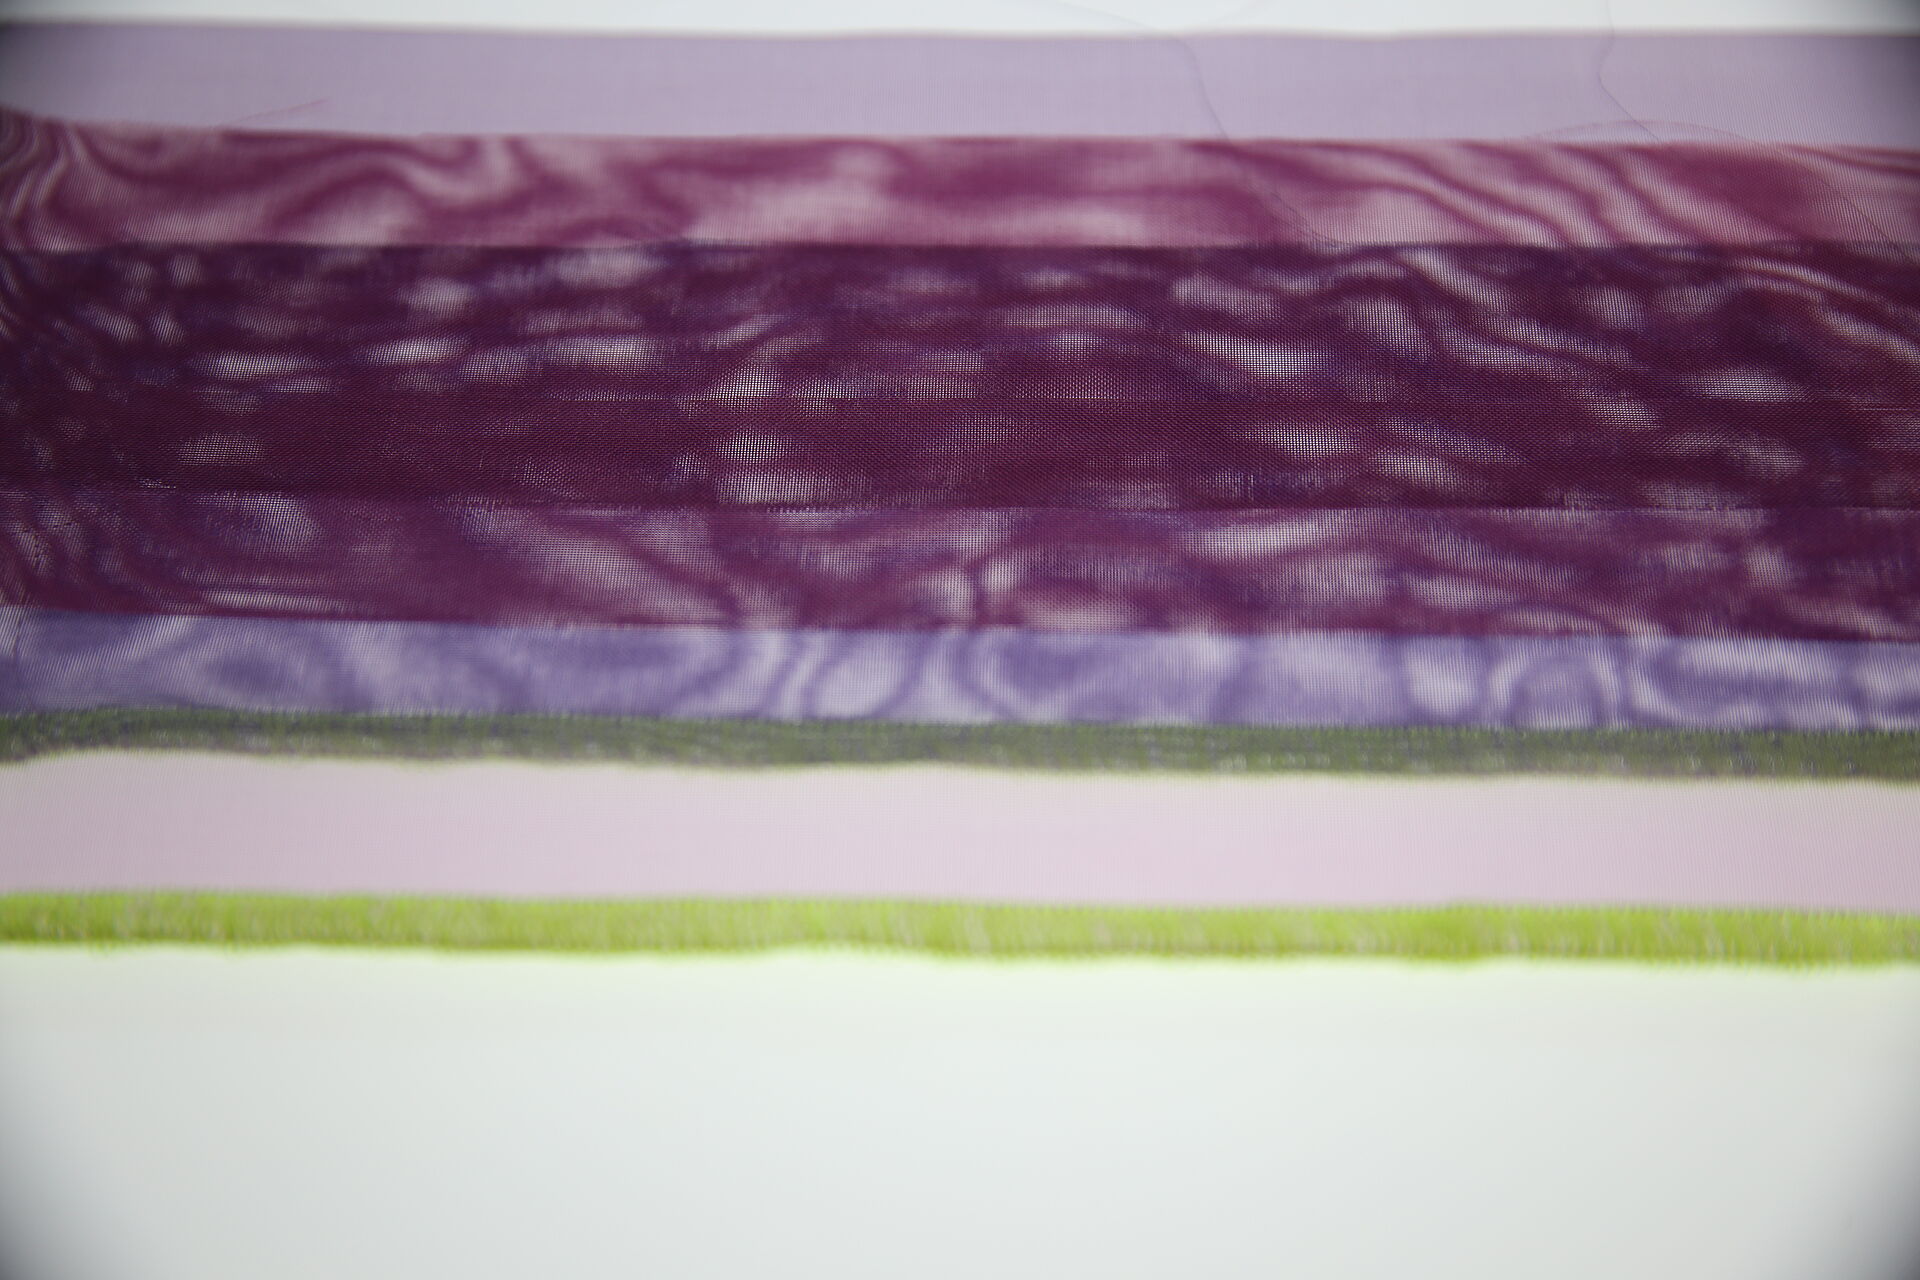 violette Stoffe mit neongrüner Kante im Gegenlicht